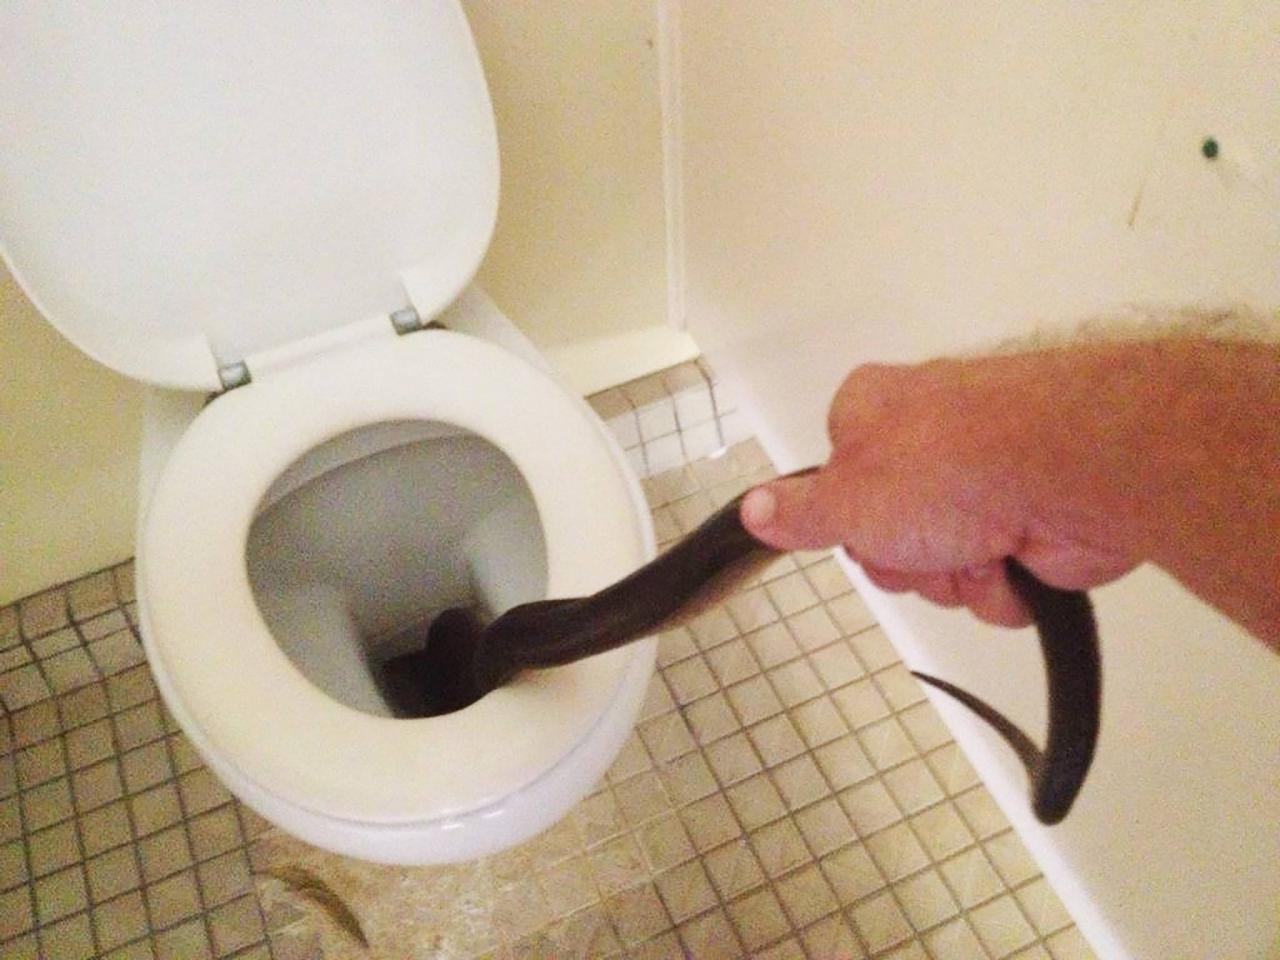 Когда унитаз уже не нужен. В туалете сингапурского магазина уже неделю живёт змея, но его владельцу норм